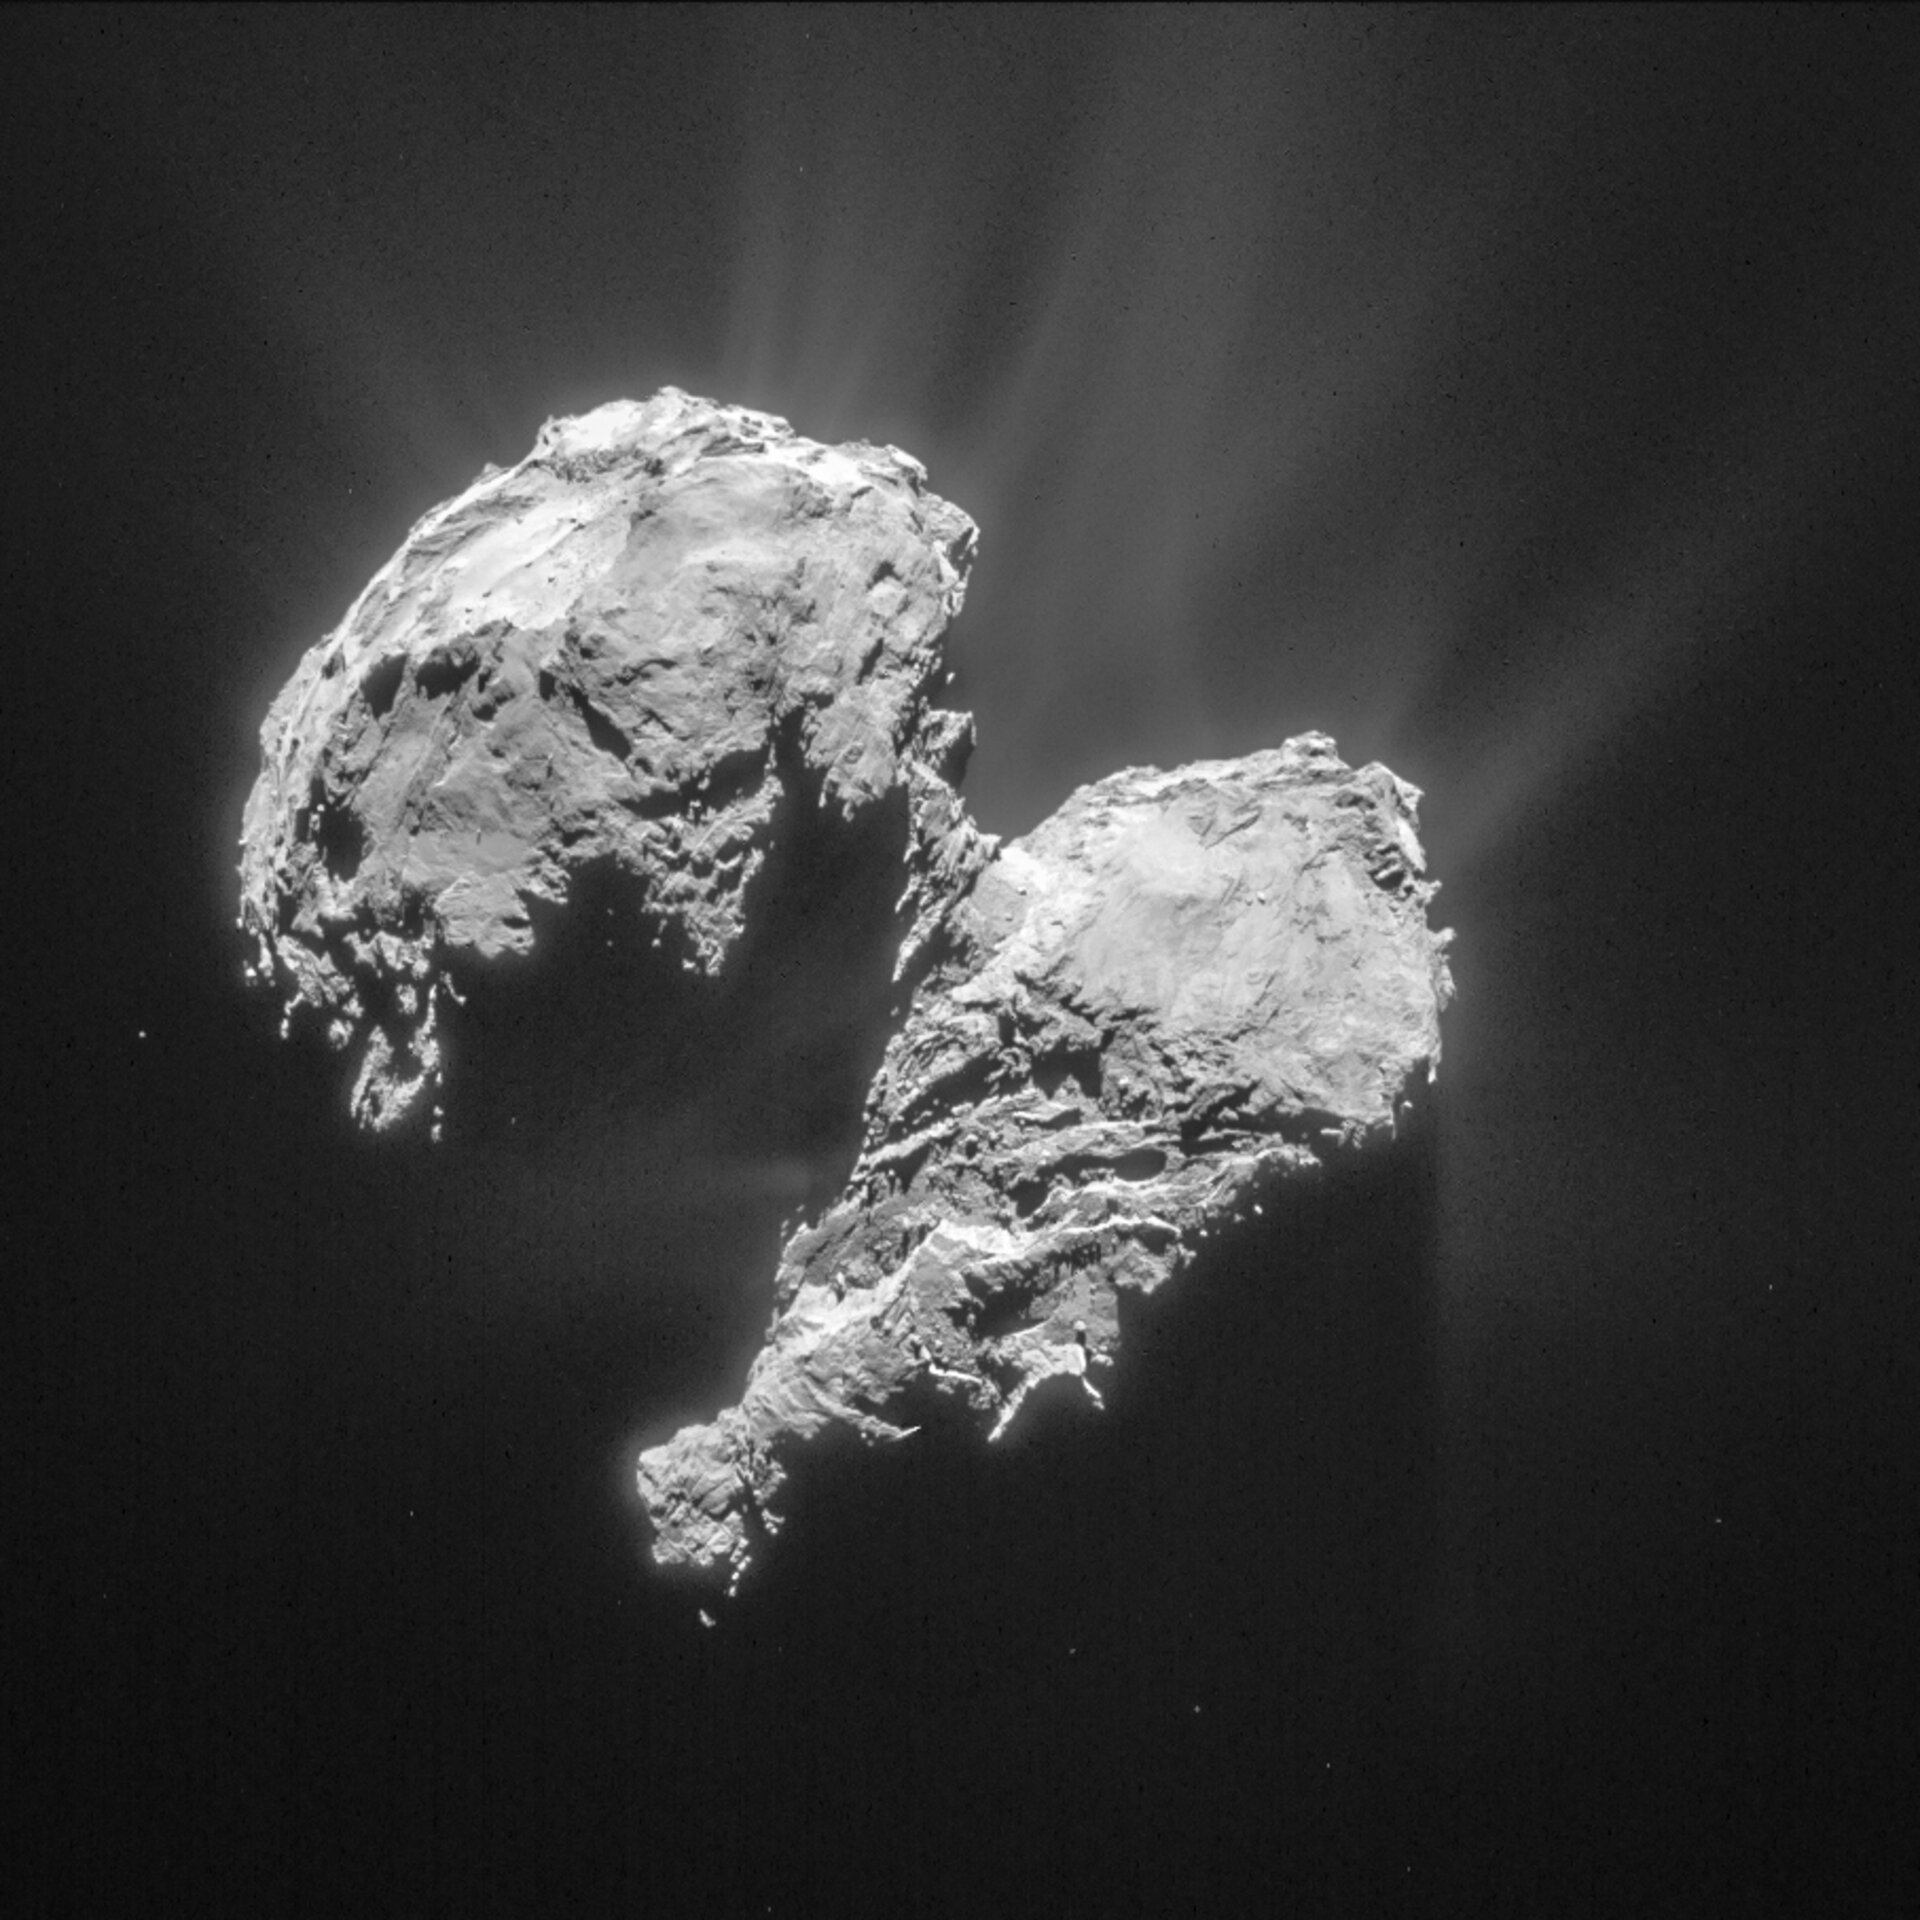 Rosetta's comet